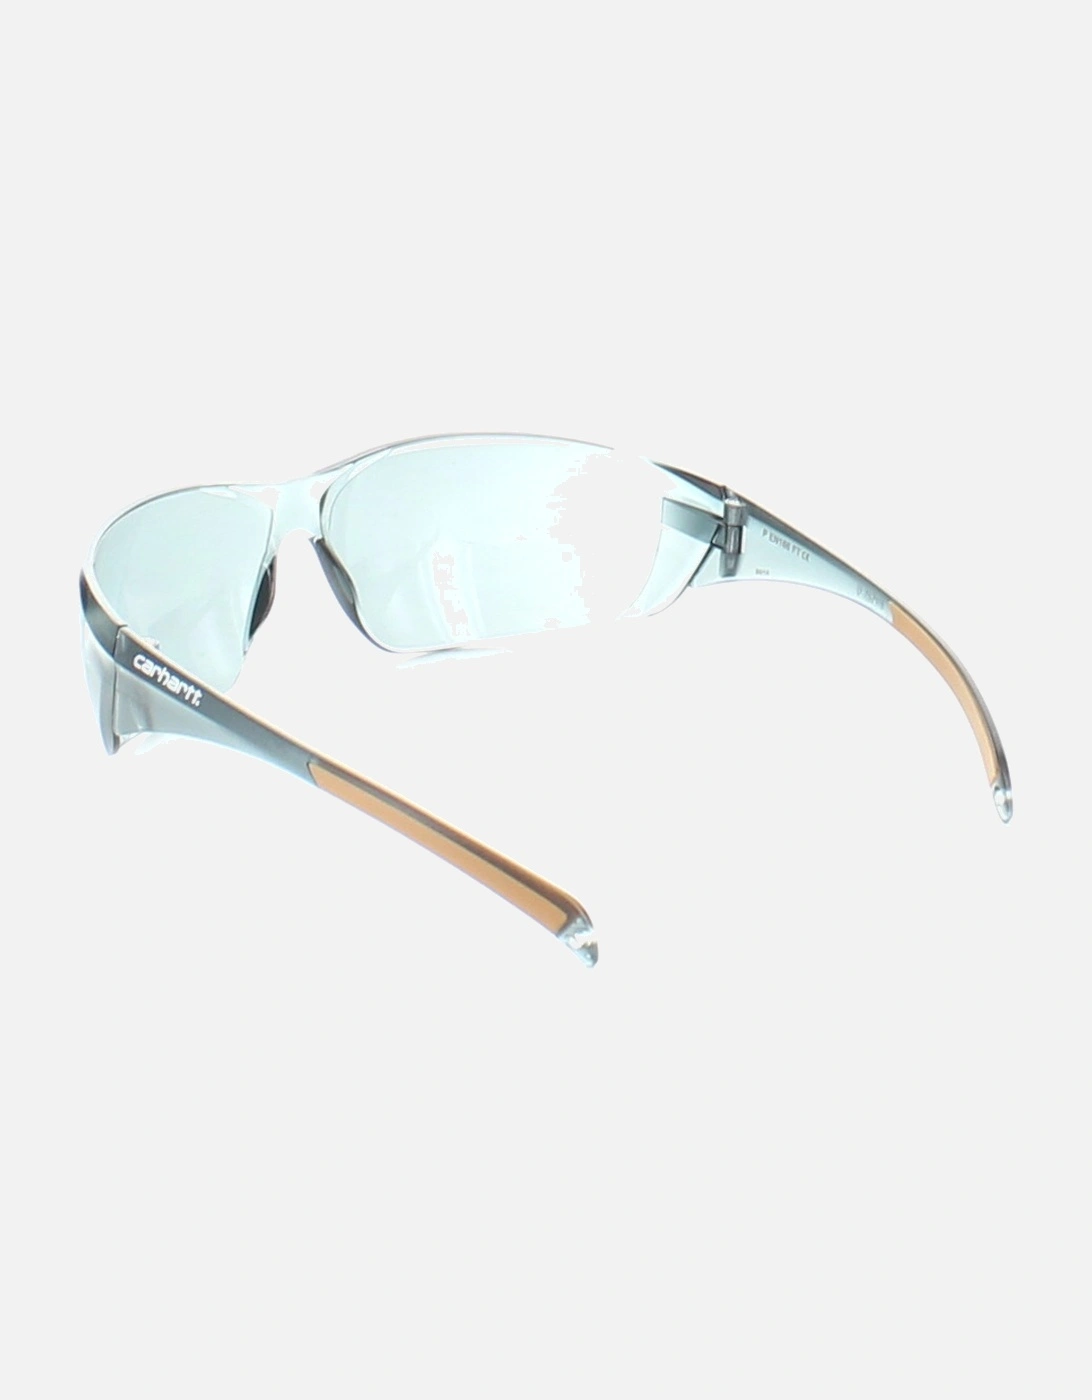 Carhartt Mens Billings Lightweight Frameless Safety Glasses